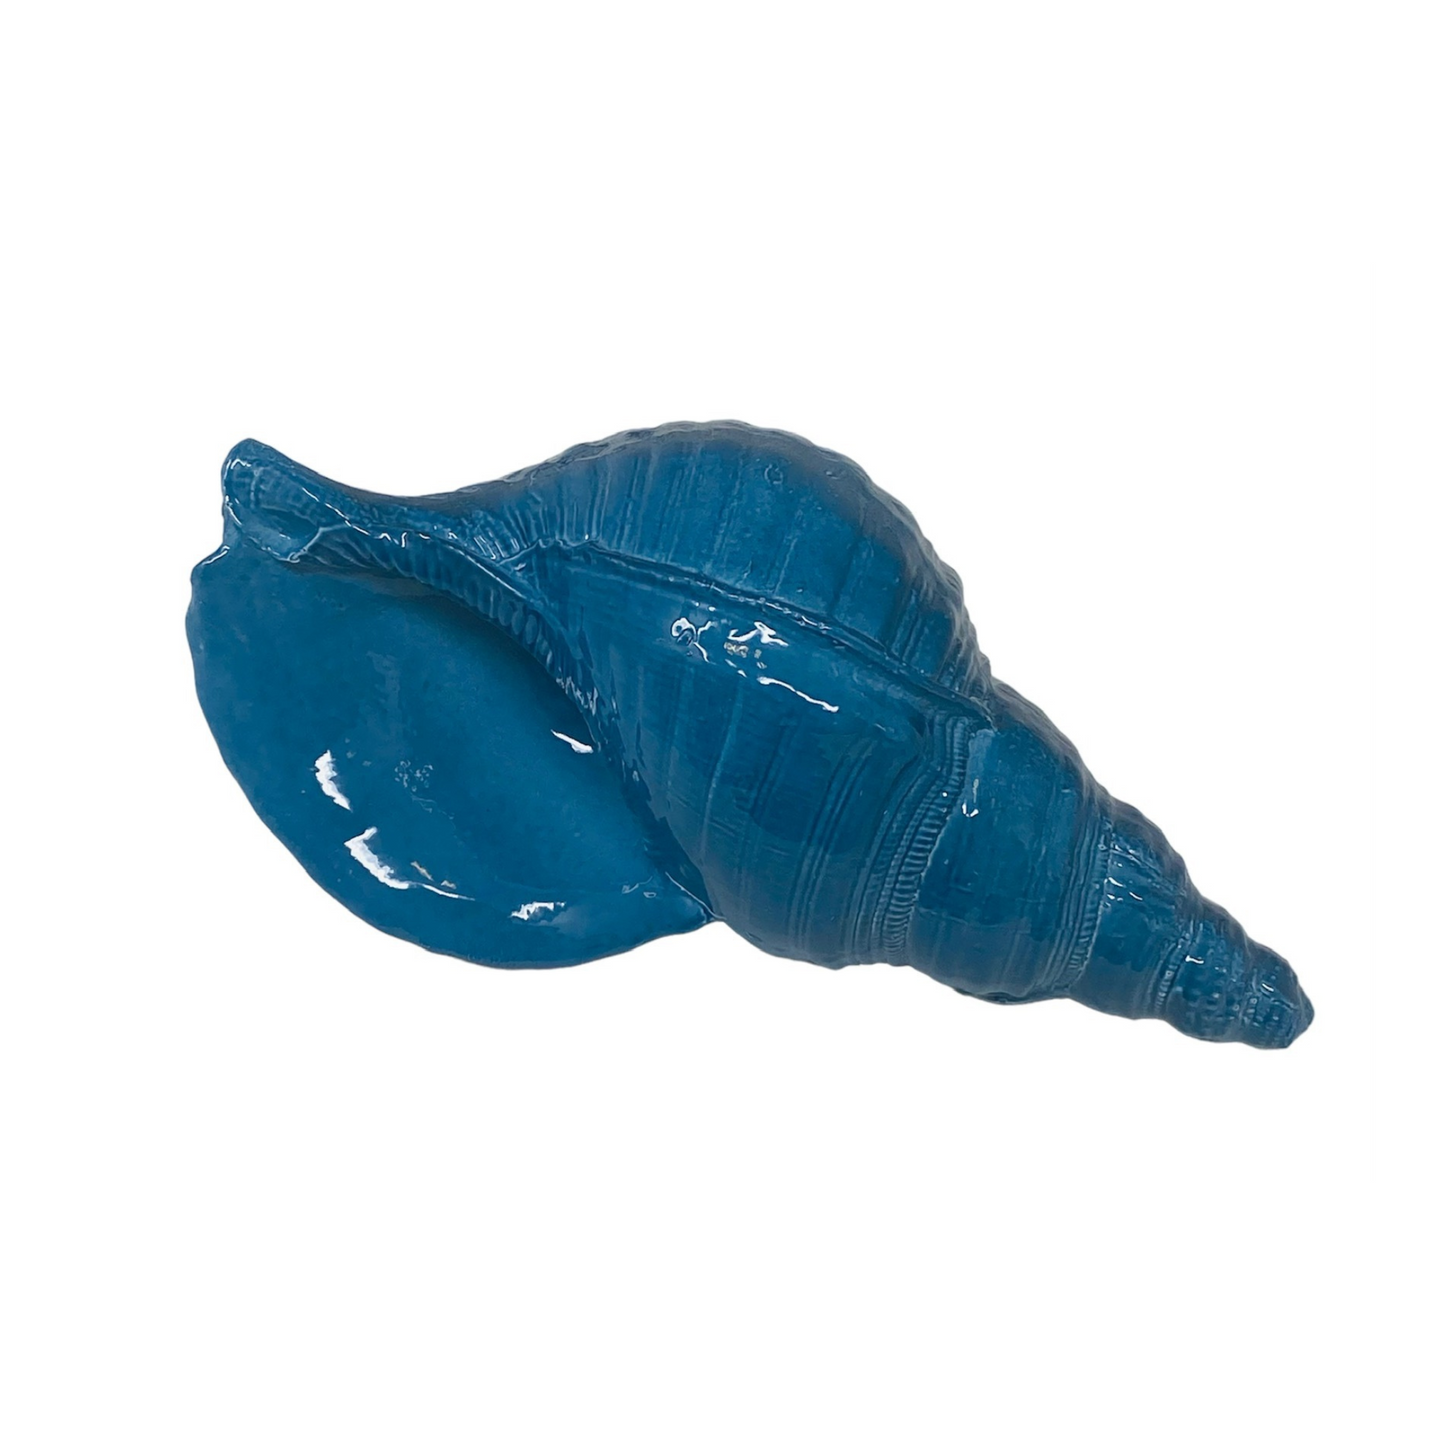 Blue Ceramic Shell